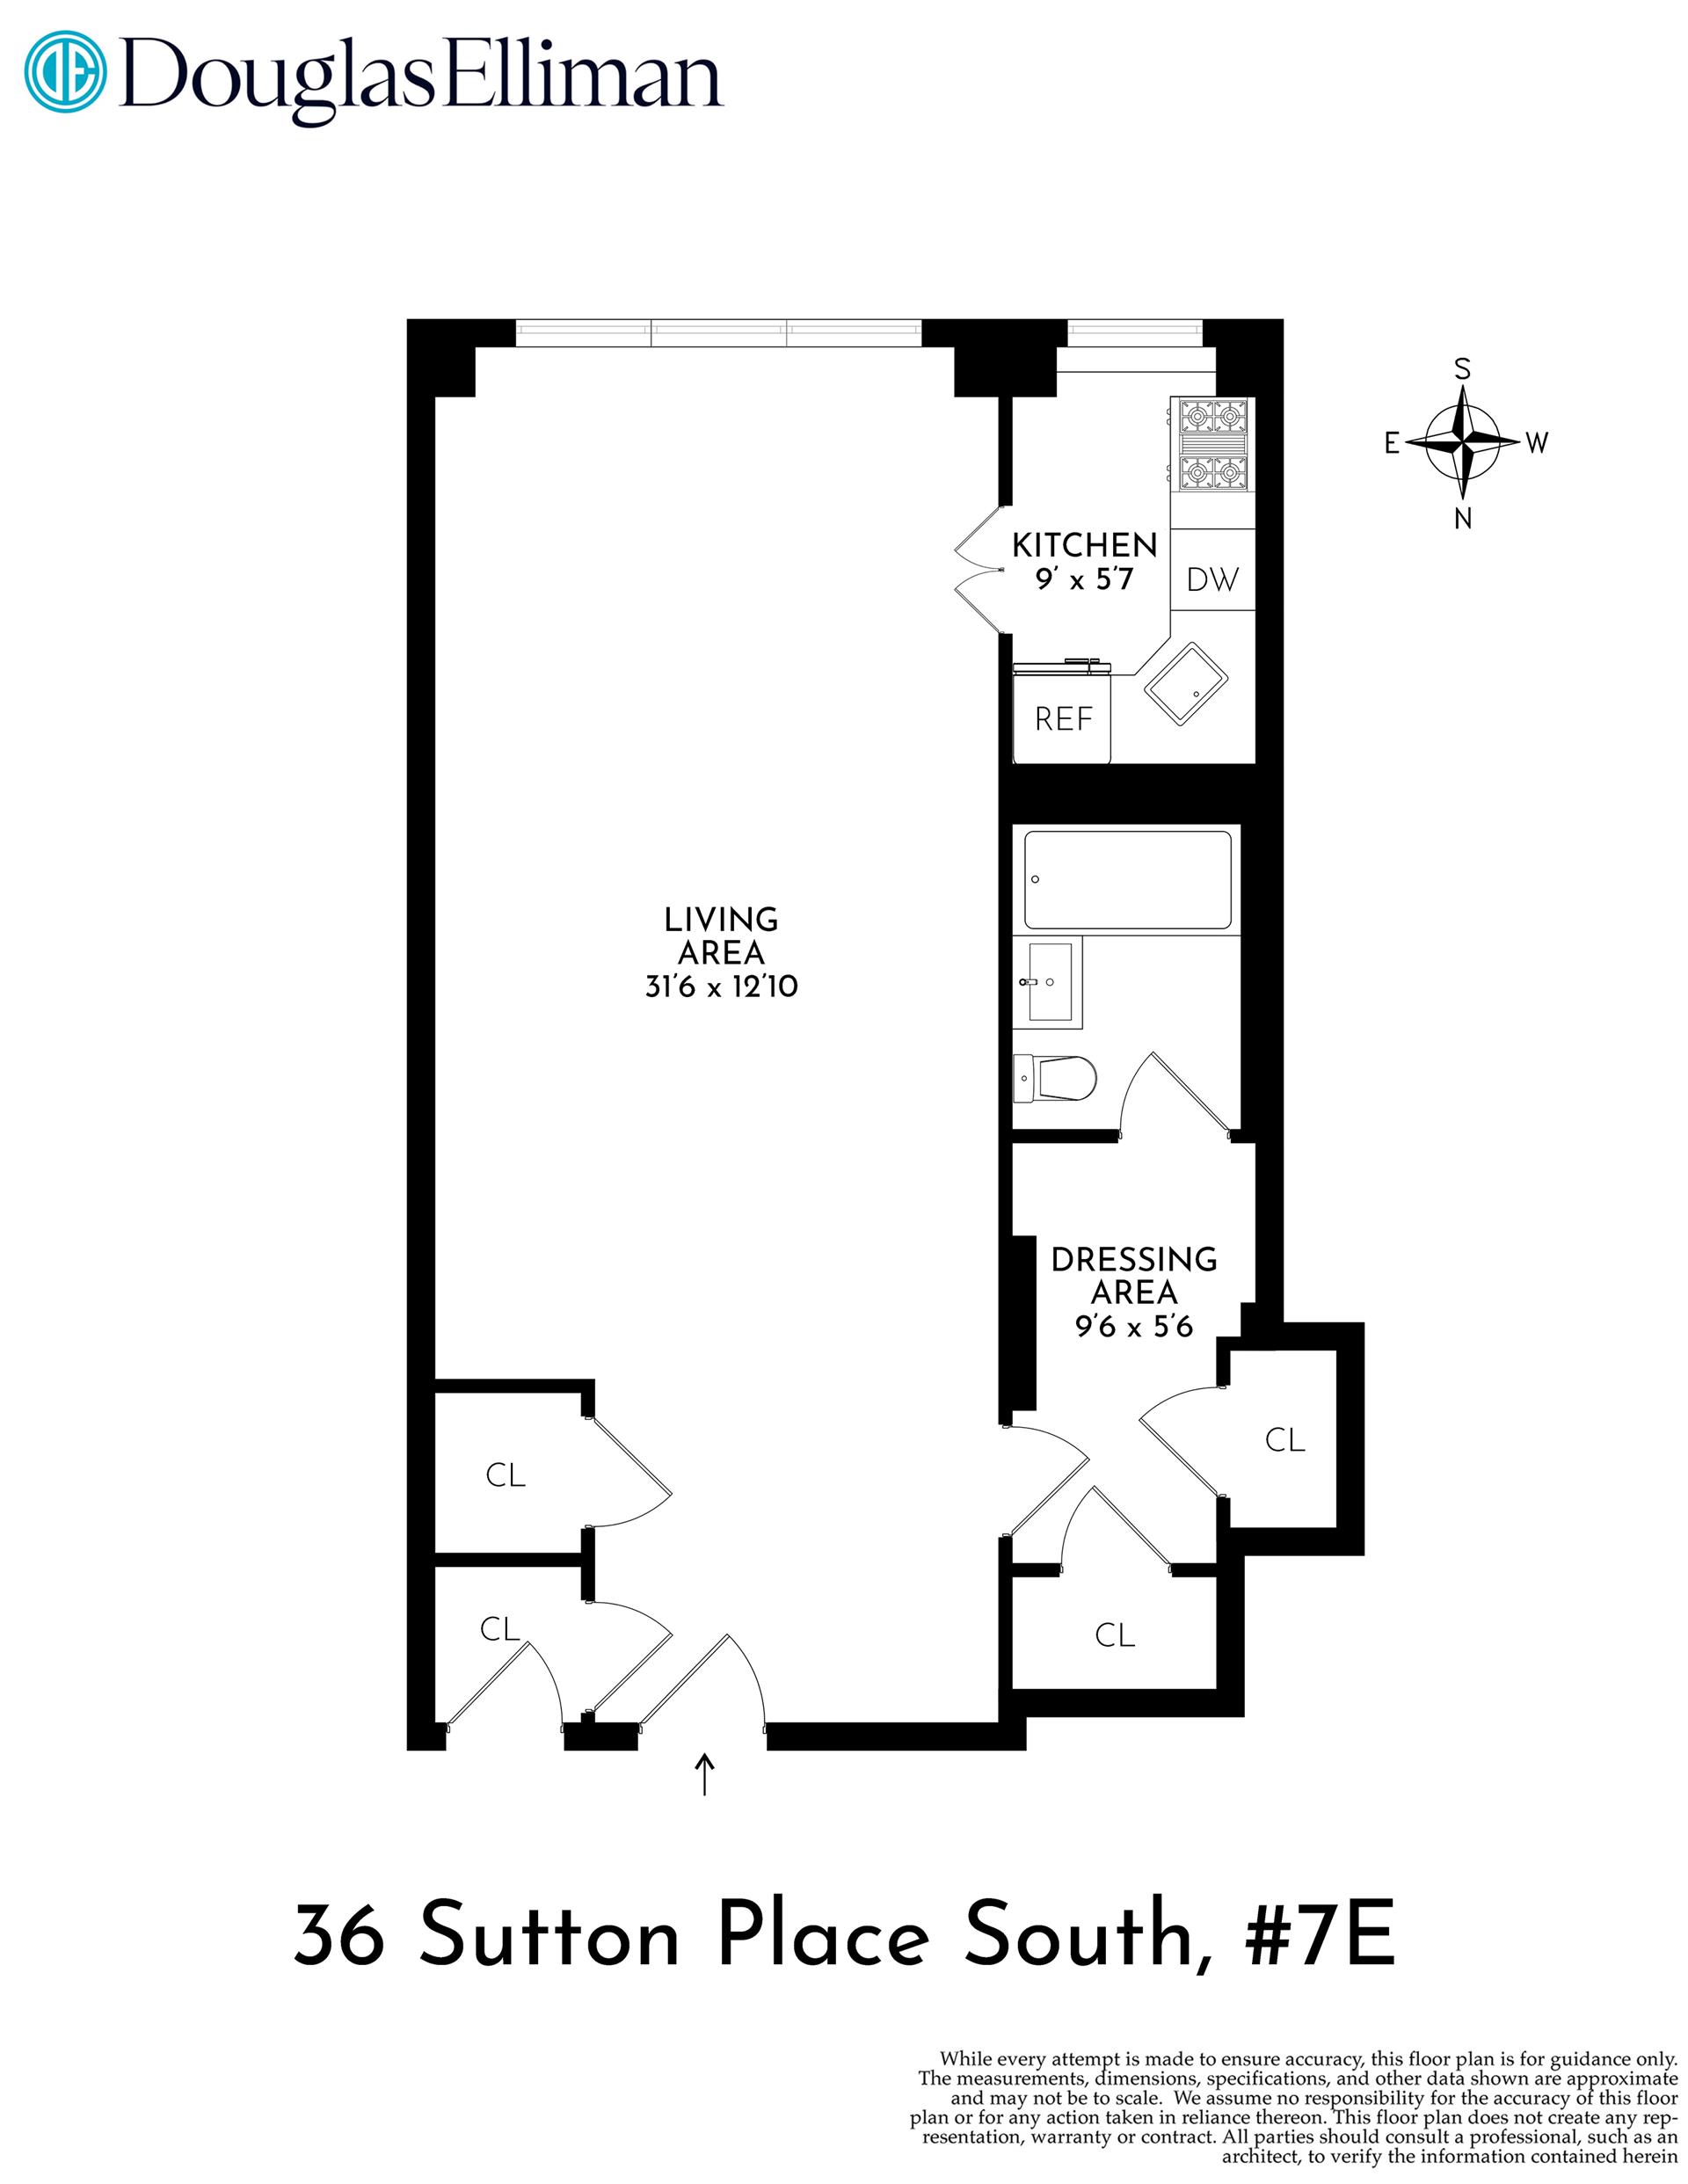 Floorplan for 36 Sutton Place, 7E